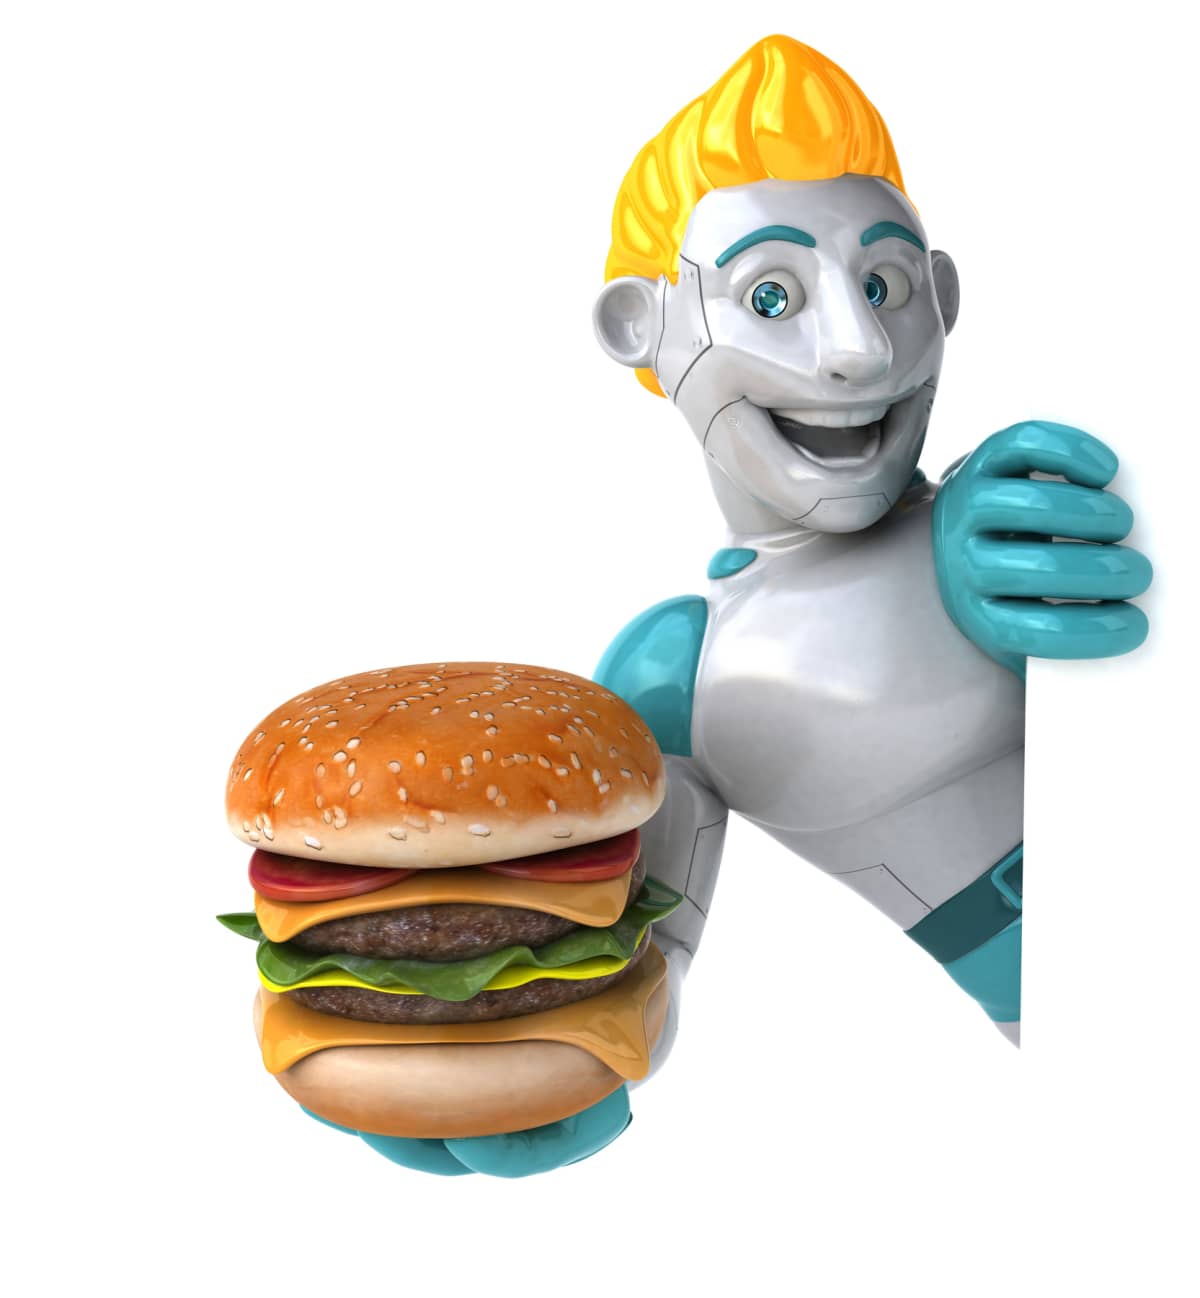 Robot holding a burger.